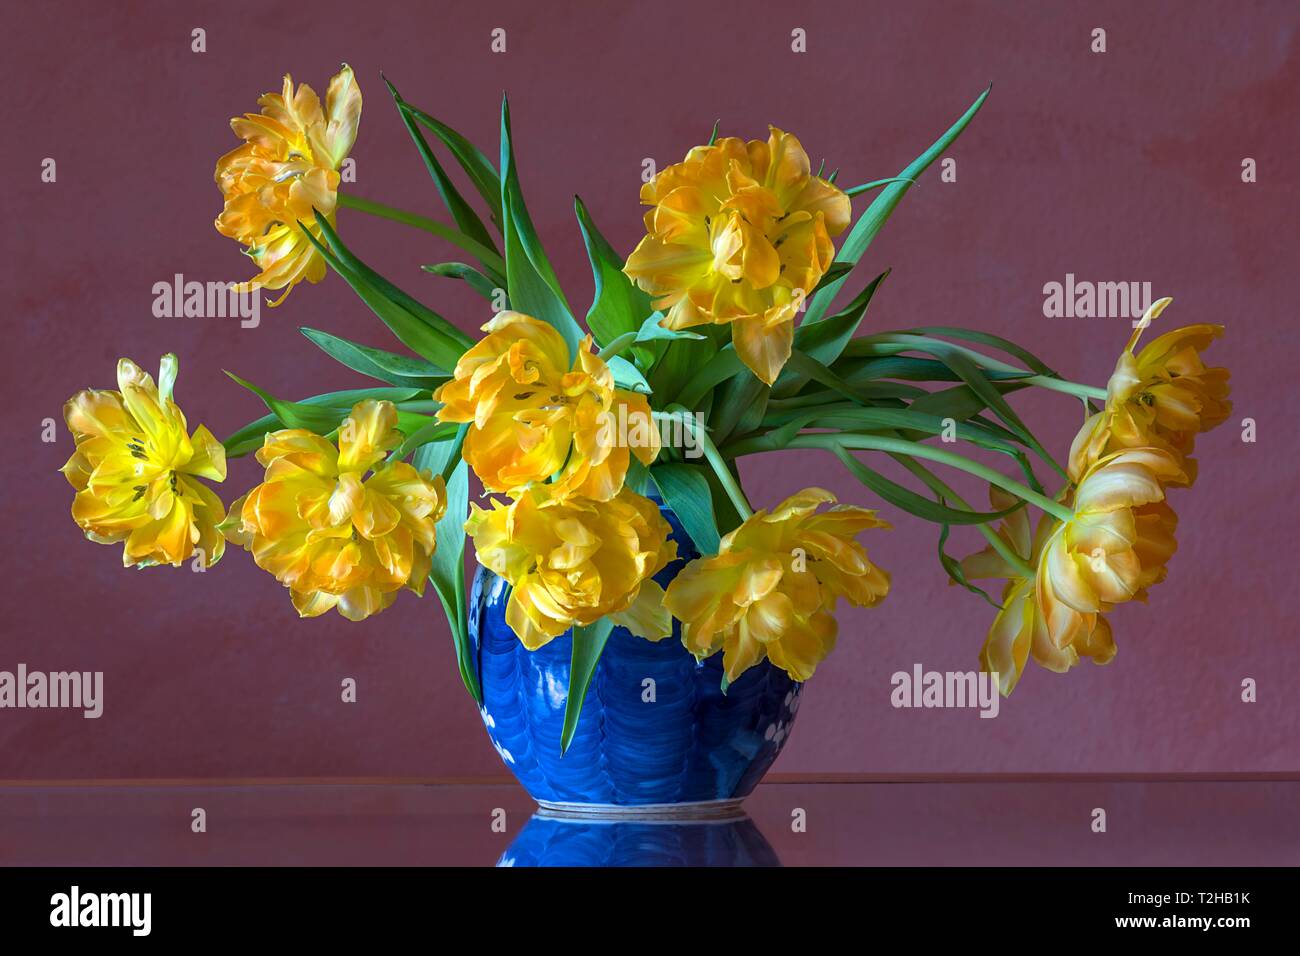 Seite und a hoher - in 2 Flowers Auflösung -Bildmaterial vase in Alamy blue - -Fotos